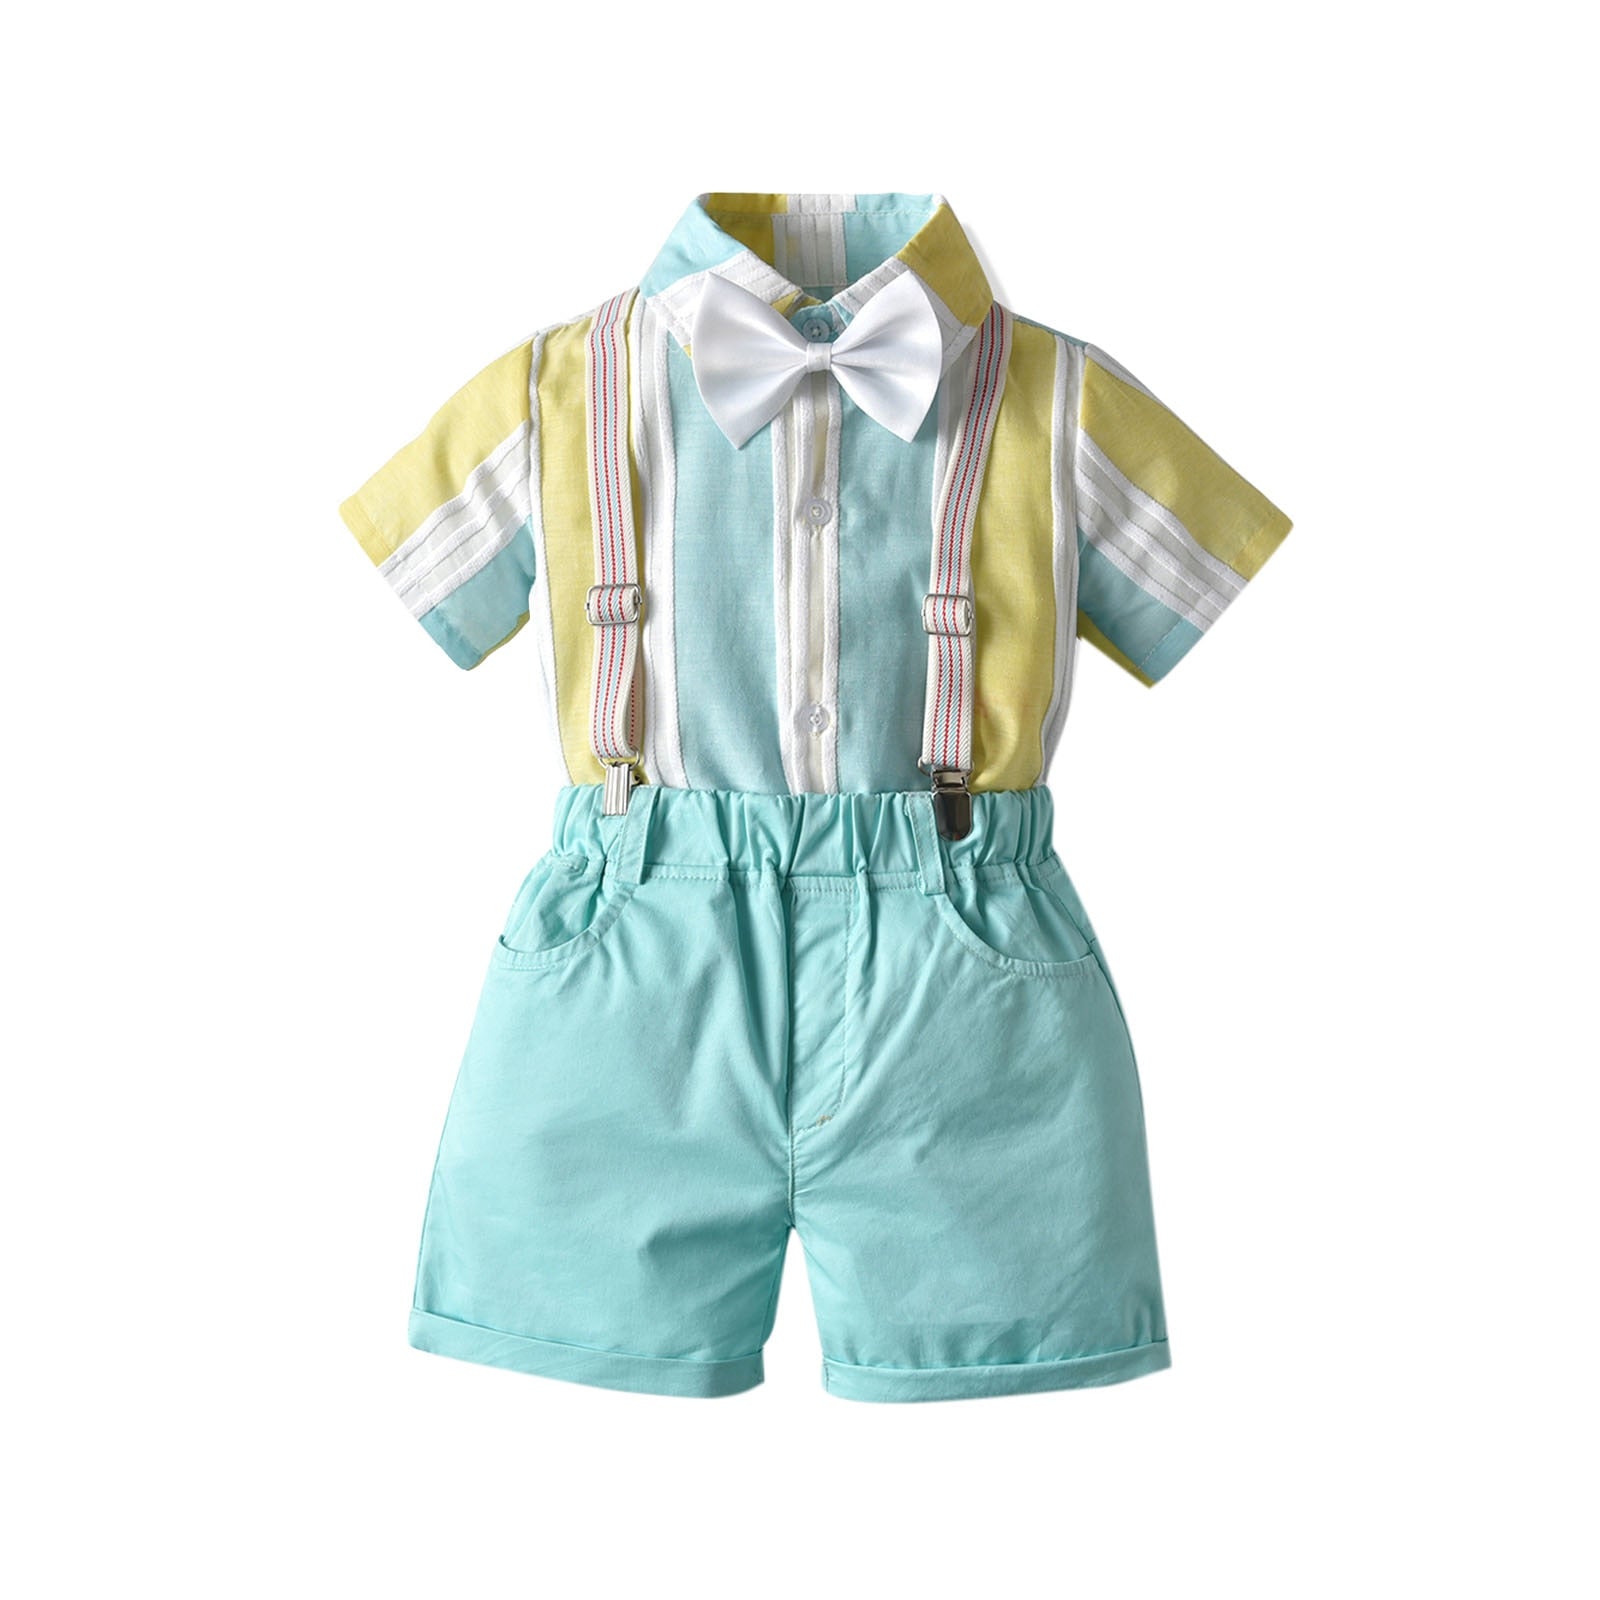 Conjunto Infantil Masculino Suspensório e Gravatinha conjunto Loja Click Certo Azul 1-2 anos 